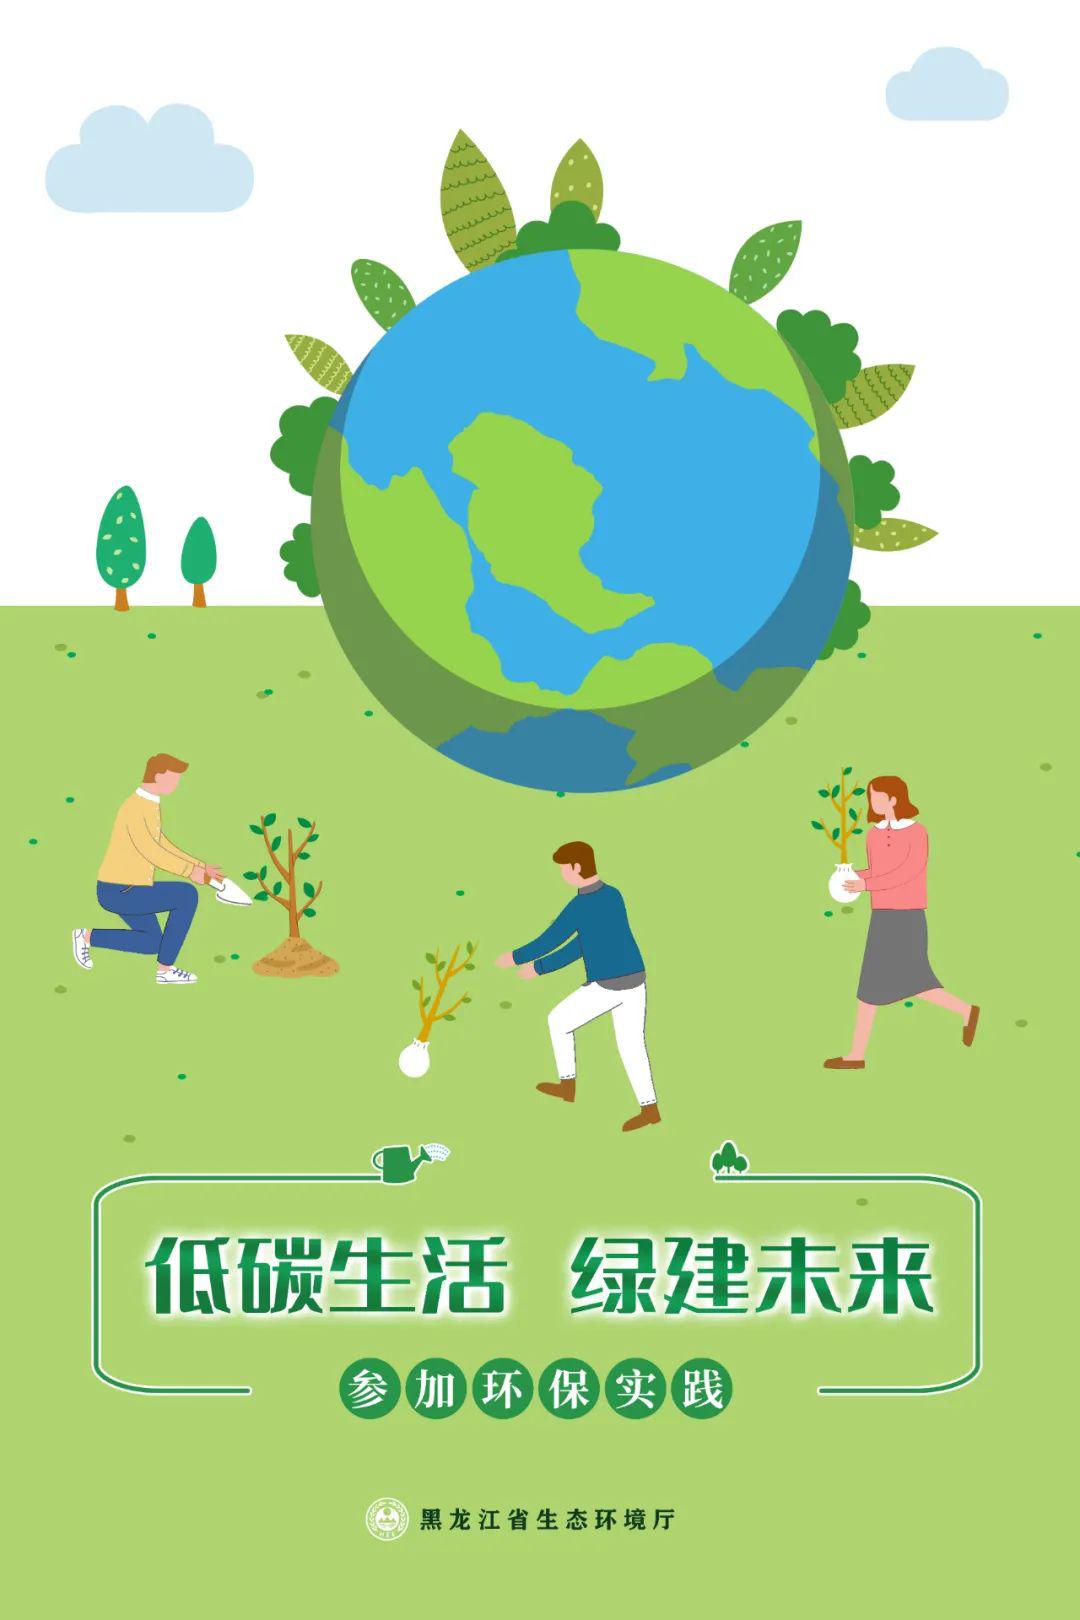 低碳日①丨海报发布:低碳生活,绿建未来